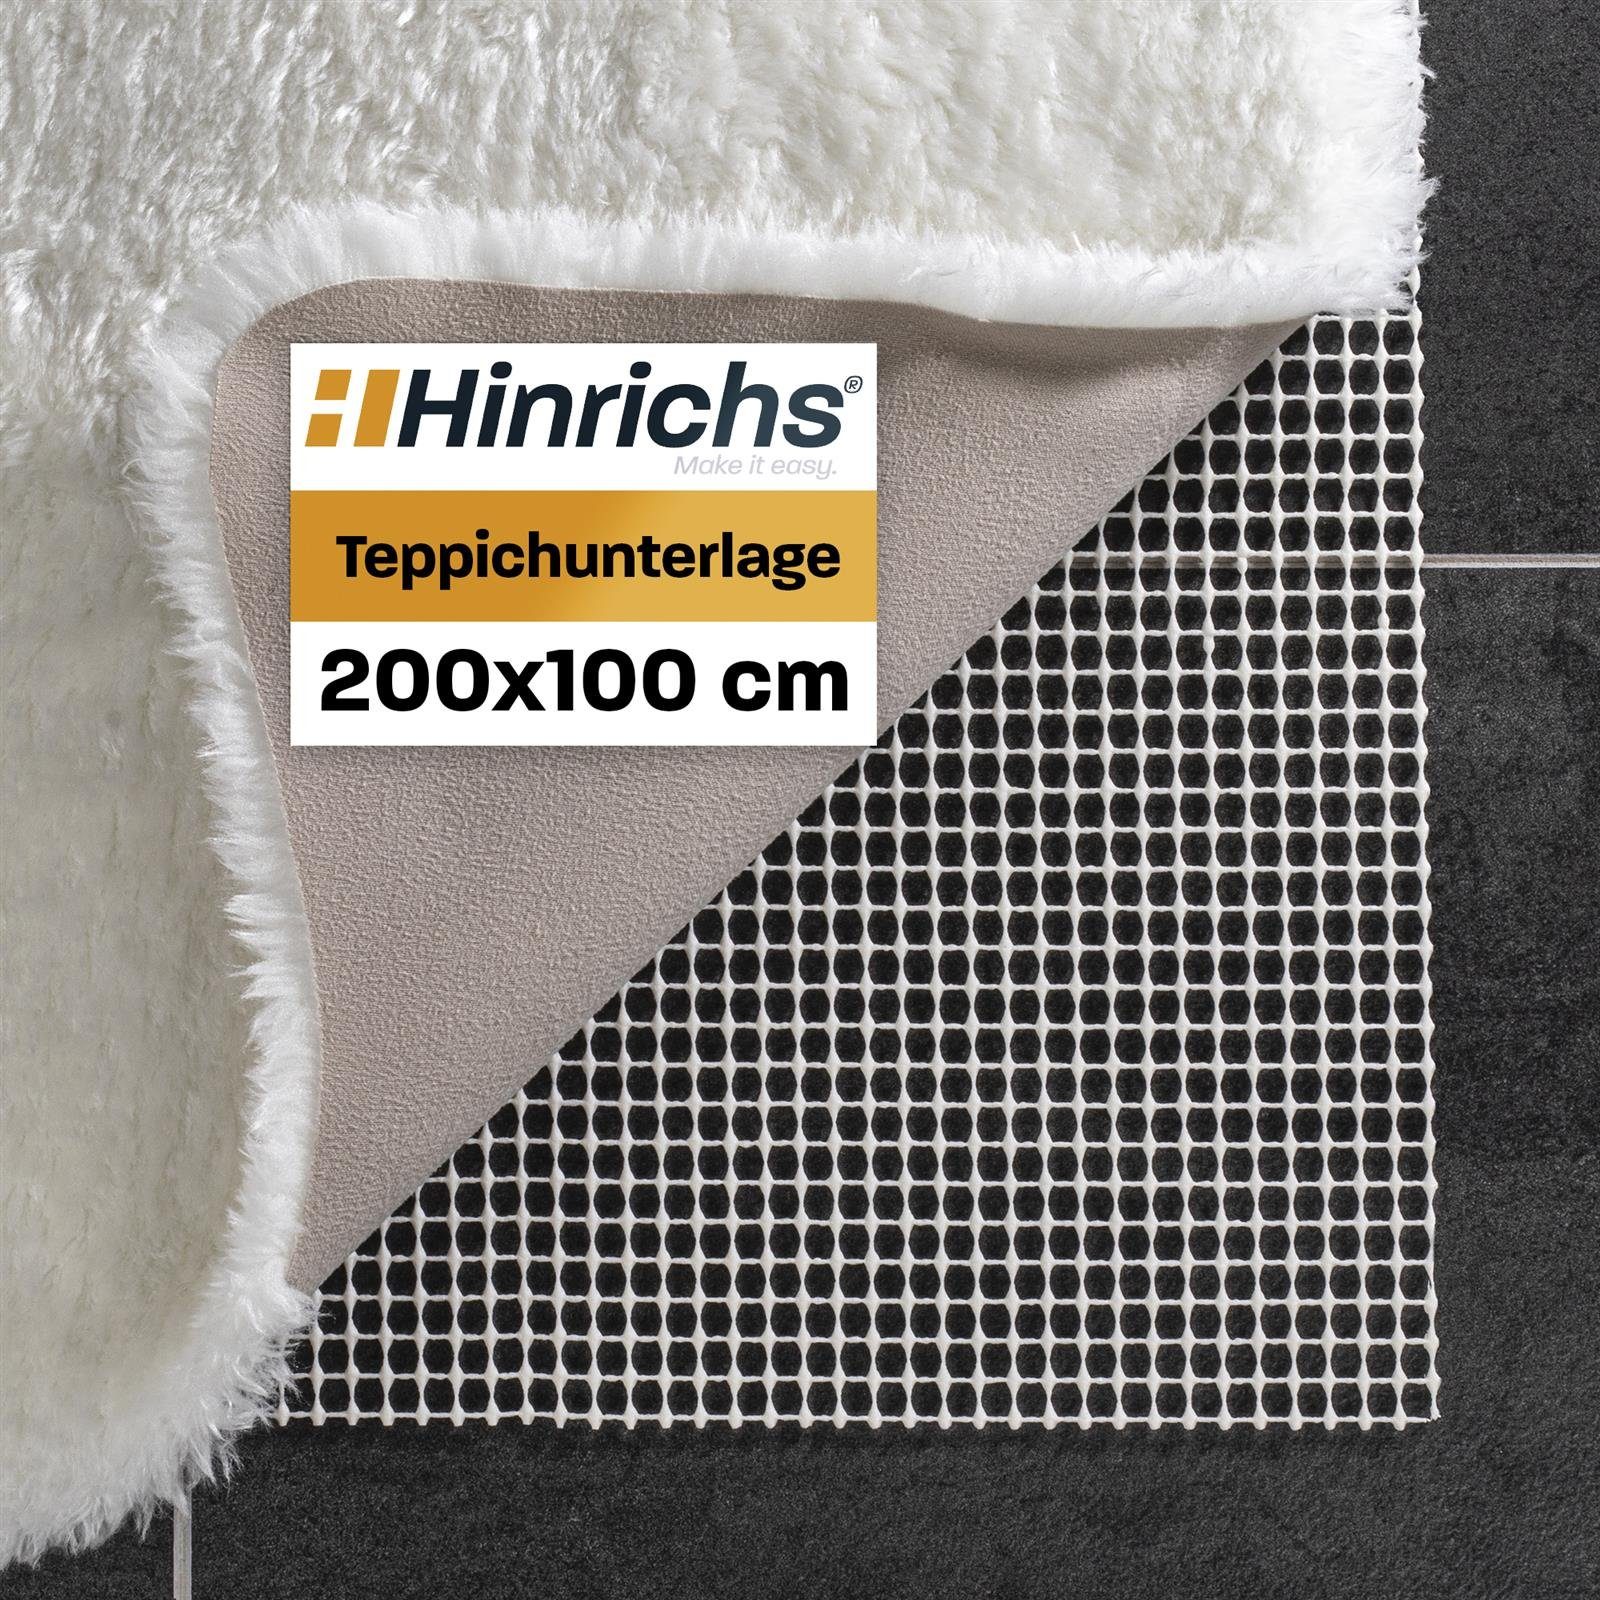 Antirutsch Teppichunterlage Teppich Antirutschmatte 200x100 cm, Hinrichs,  Zuschneidbare Teppich Antirutschunterlage inklusive 24 Filzgleiter